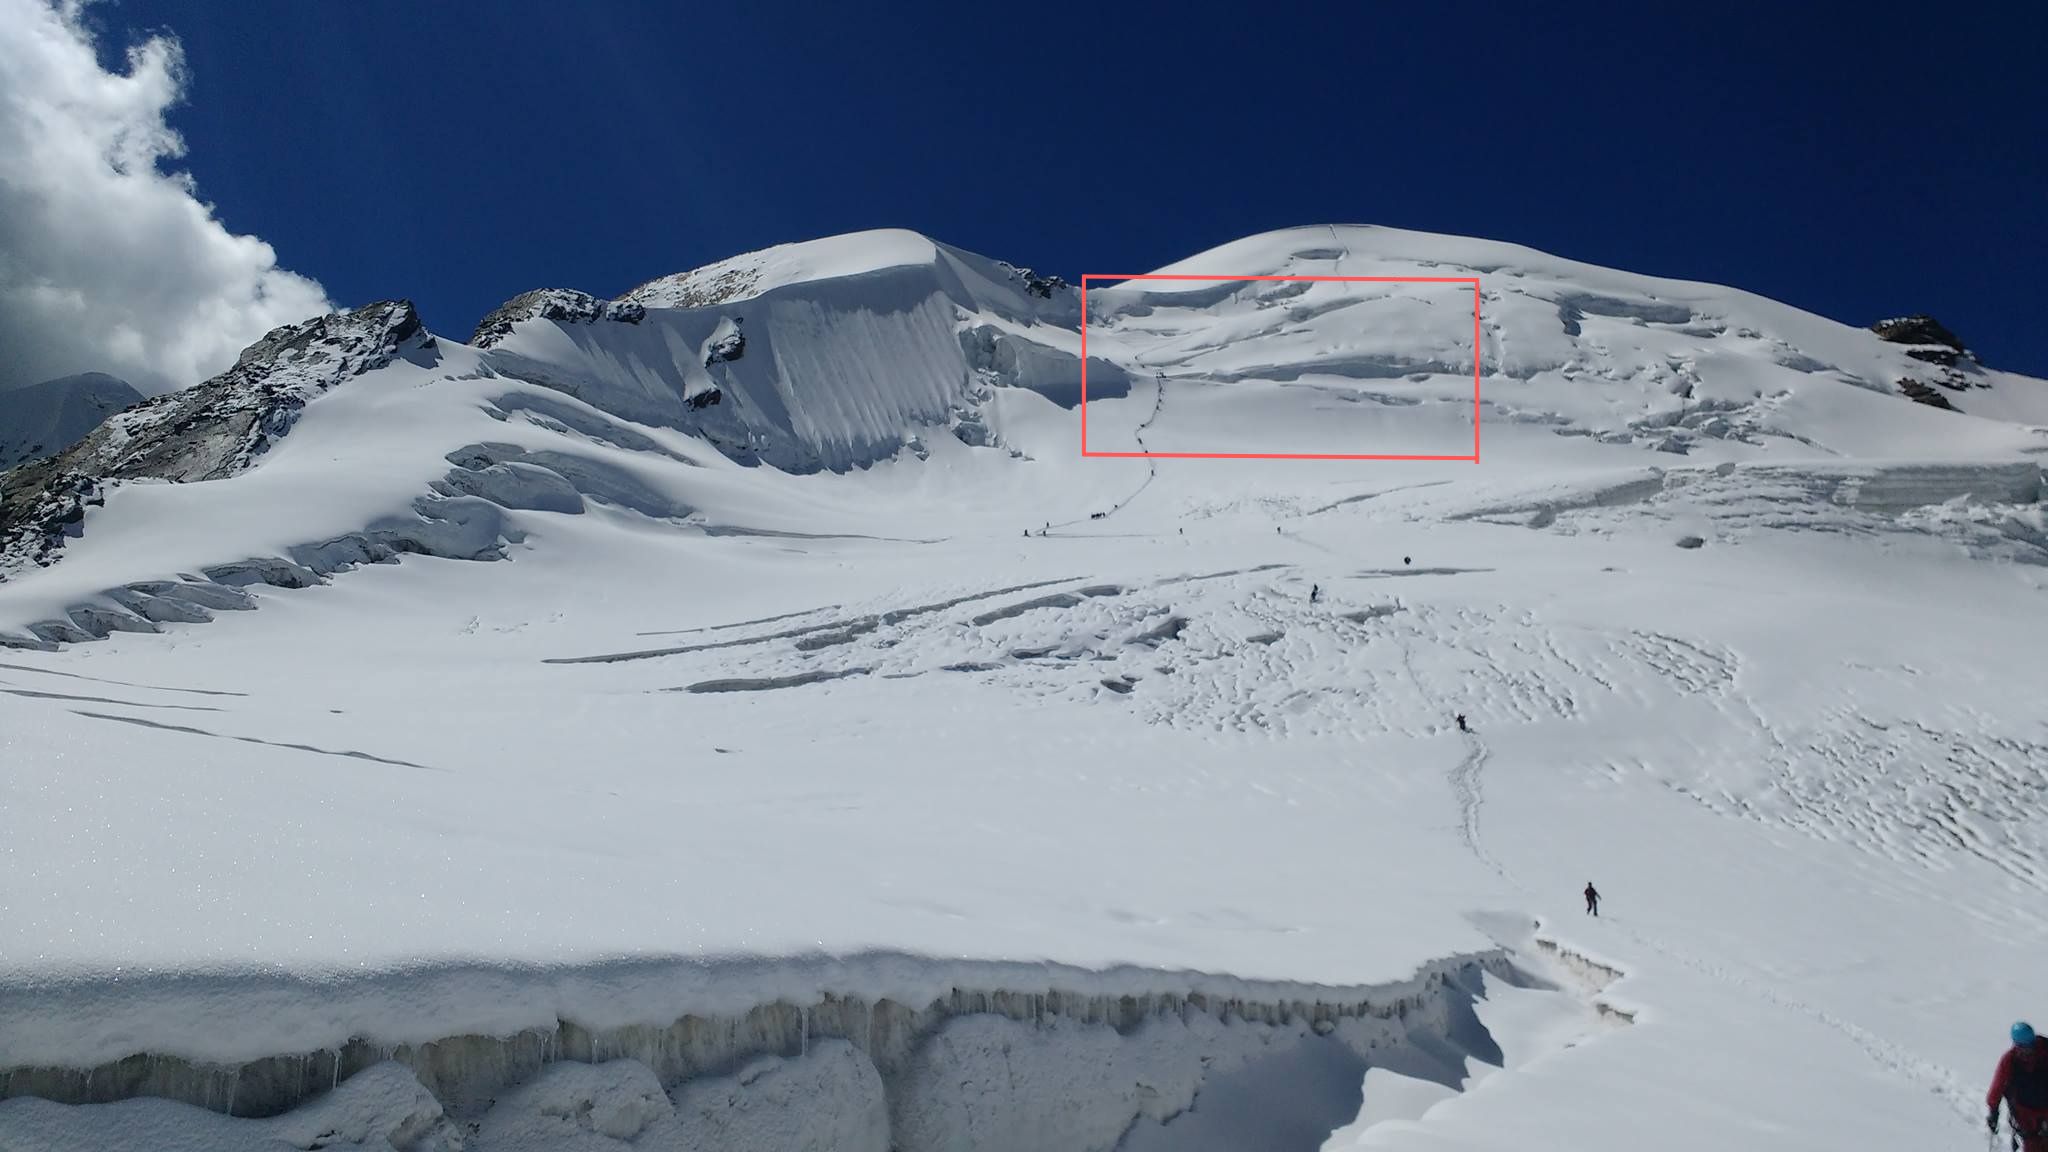 Slab avalanche zone of Draupadi ka Danda 2 Peak